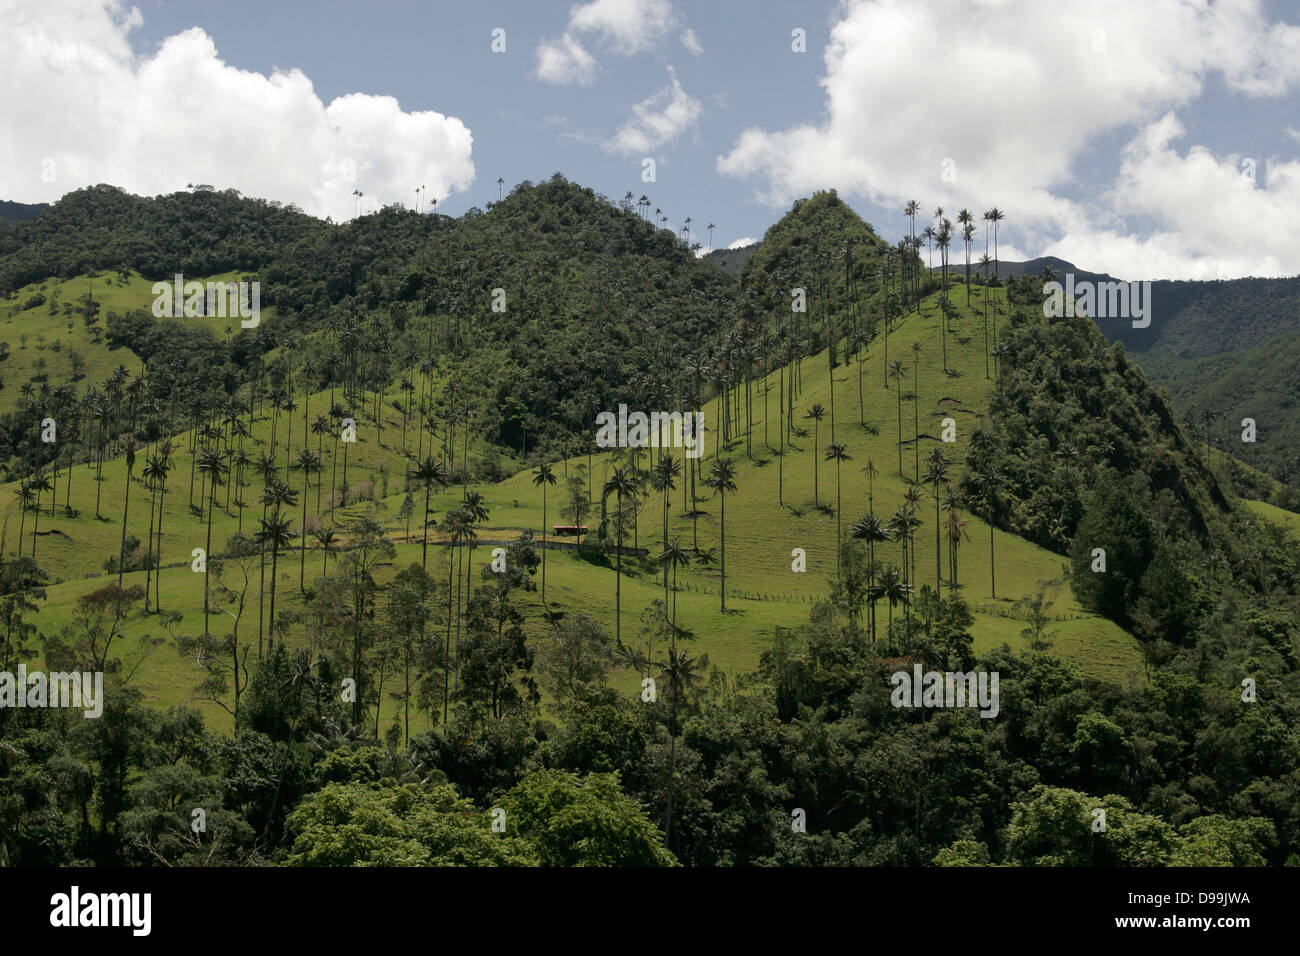 Palmas de cera (cire palms), le plus grand dans le monde palm (jusqu'à 60 m de hauteur) Valle de Cocora près de Salento, Colombie, Amérique du Sud Banque D'Images